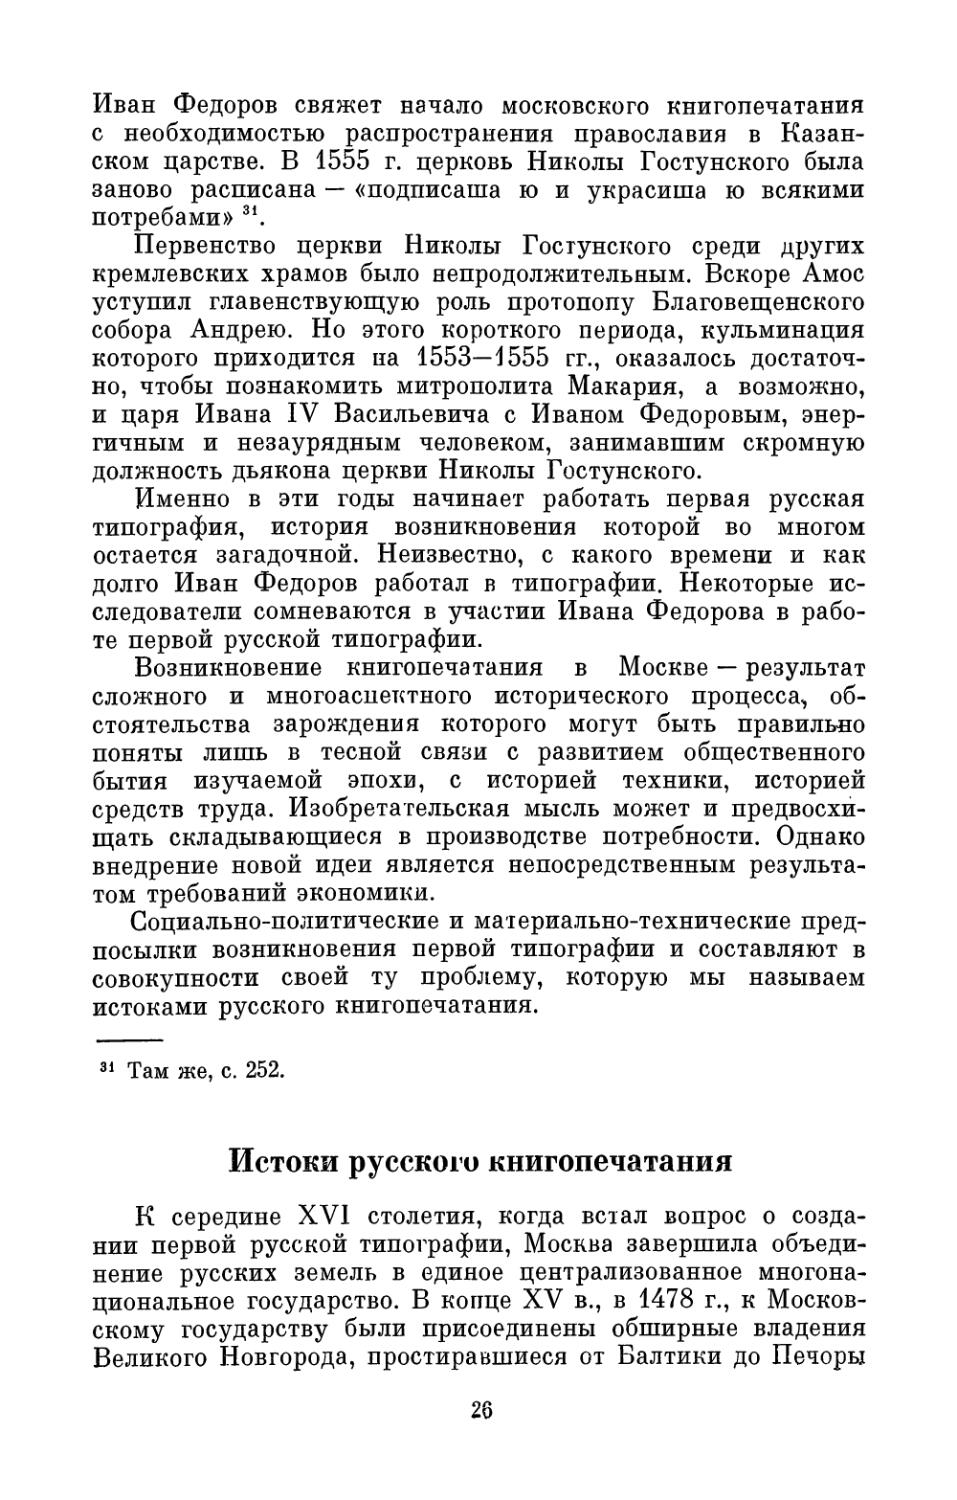 Истоки русского книгопечатания